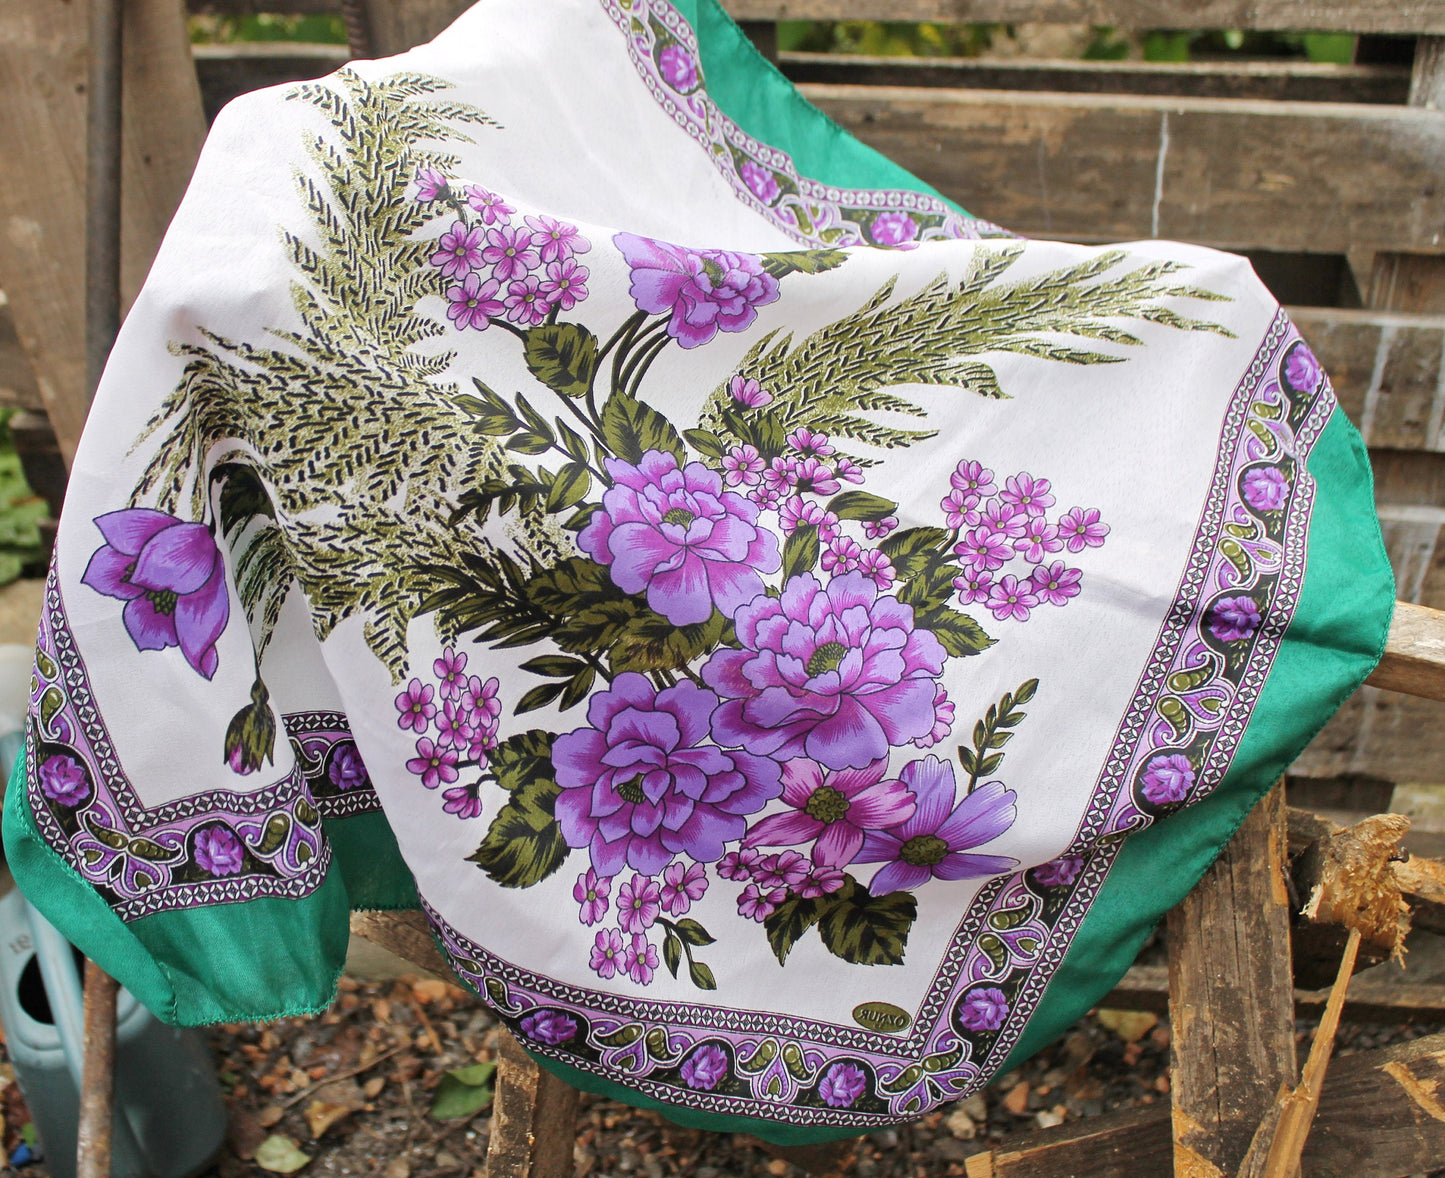 Beautiful floral head scarf - 26 inch - vintage-made in Ukraine - Babushka's head scarf - 1990s - Gypsy Shawl, Ethnic Scarf